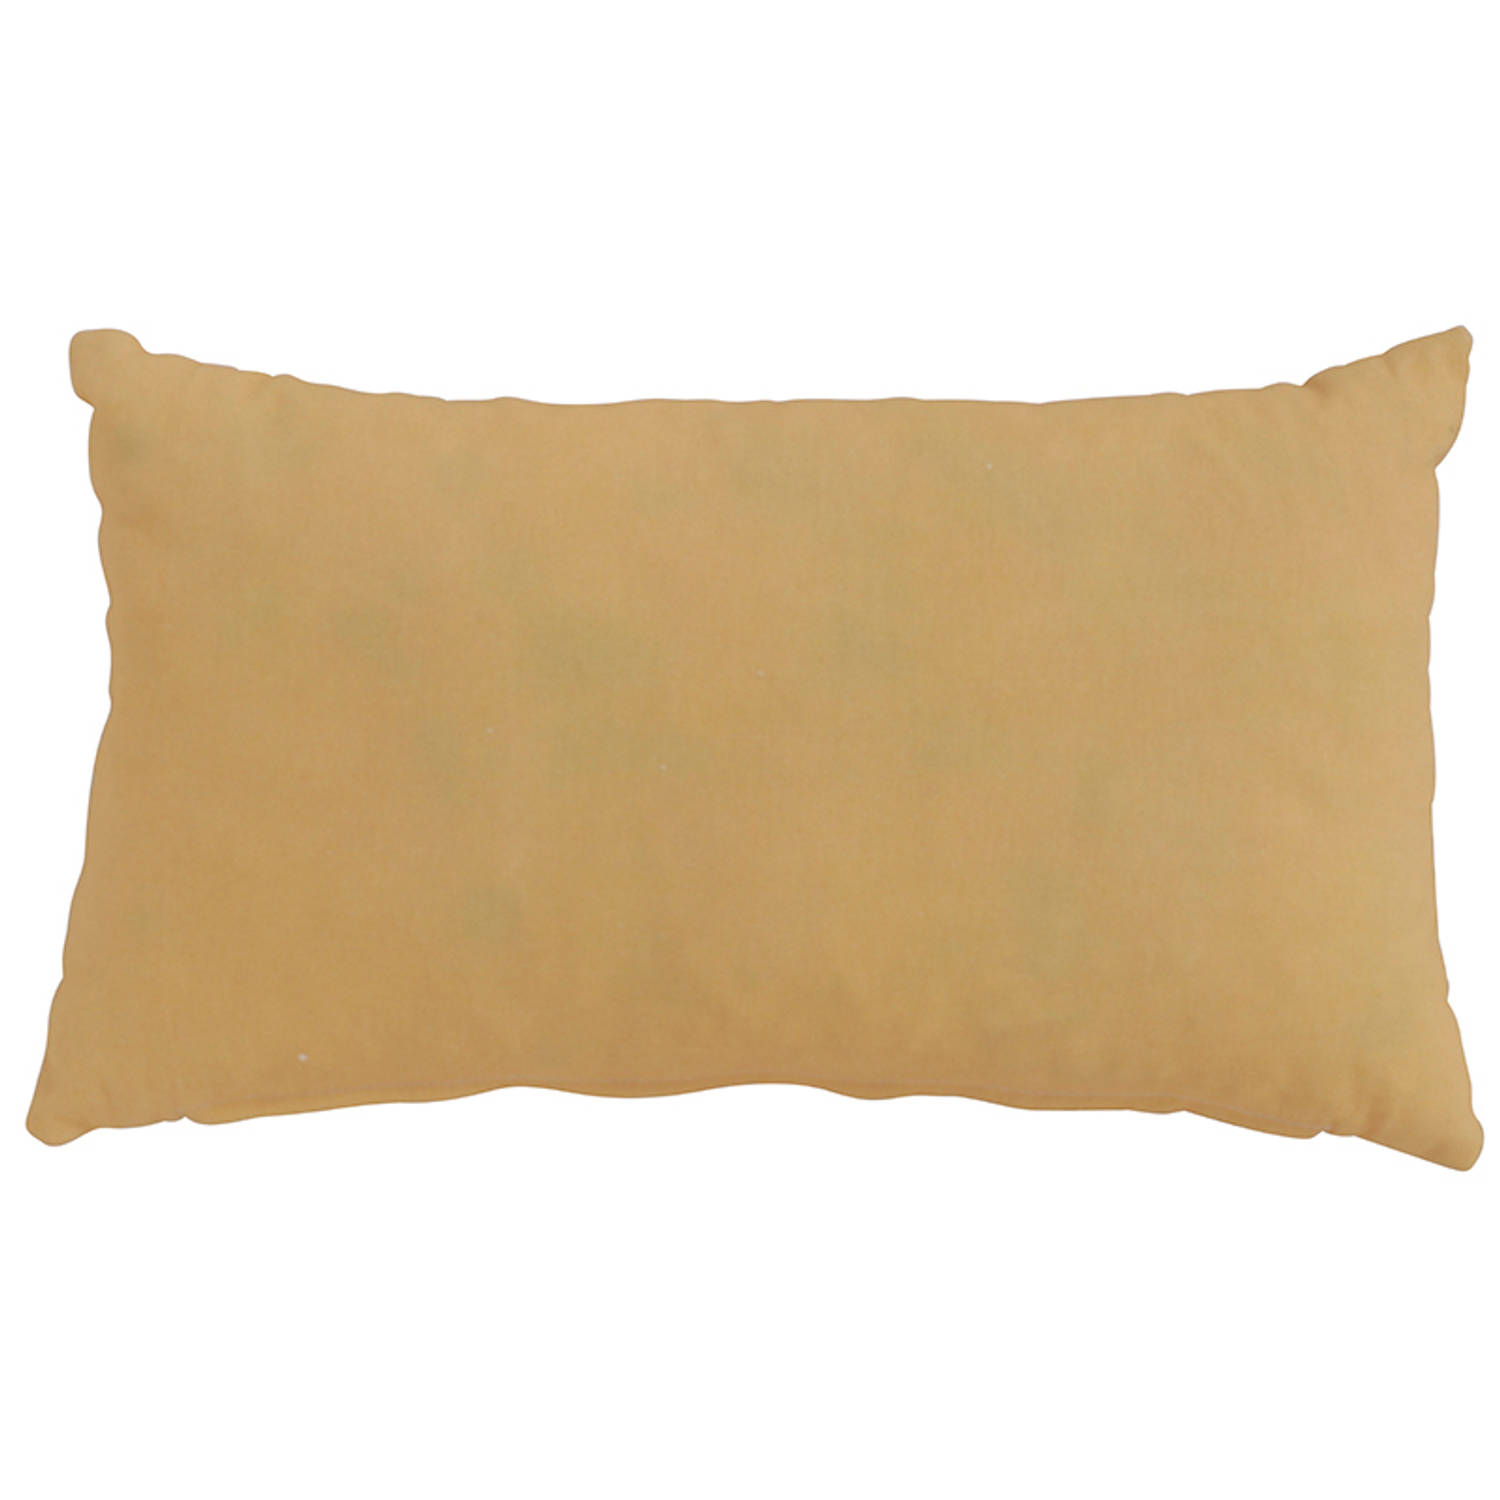 Hartman Sierkussen Pillow 50x30cm Laagste prijsgarantie!